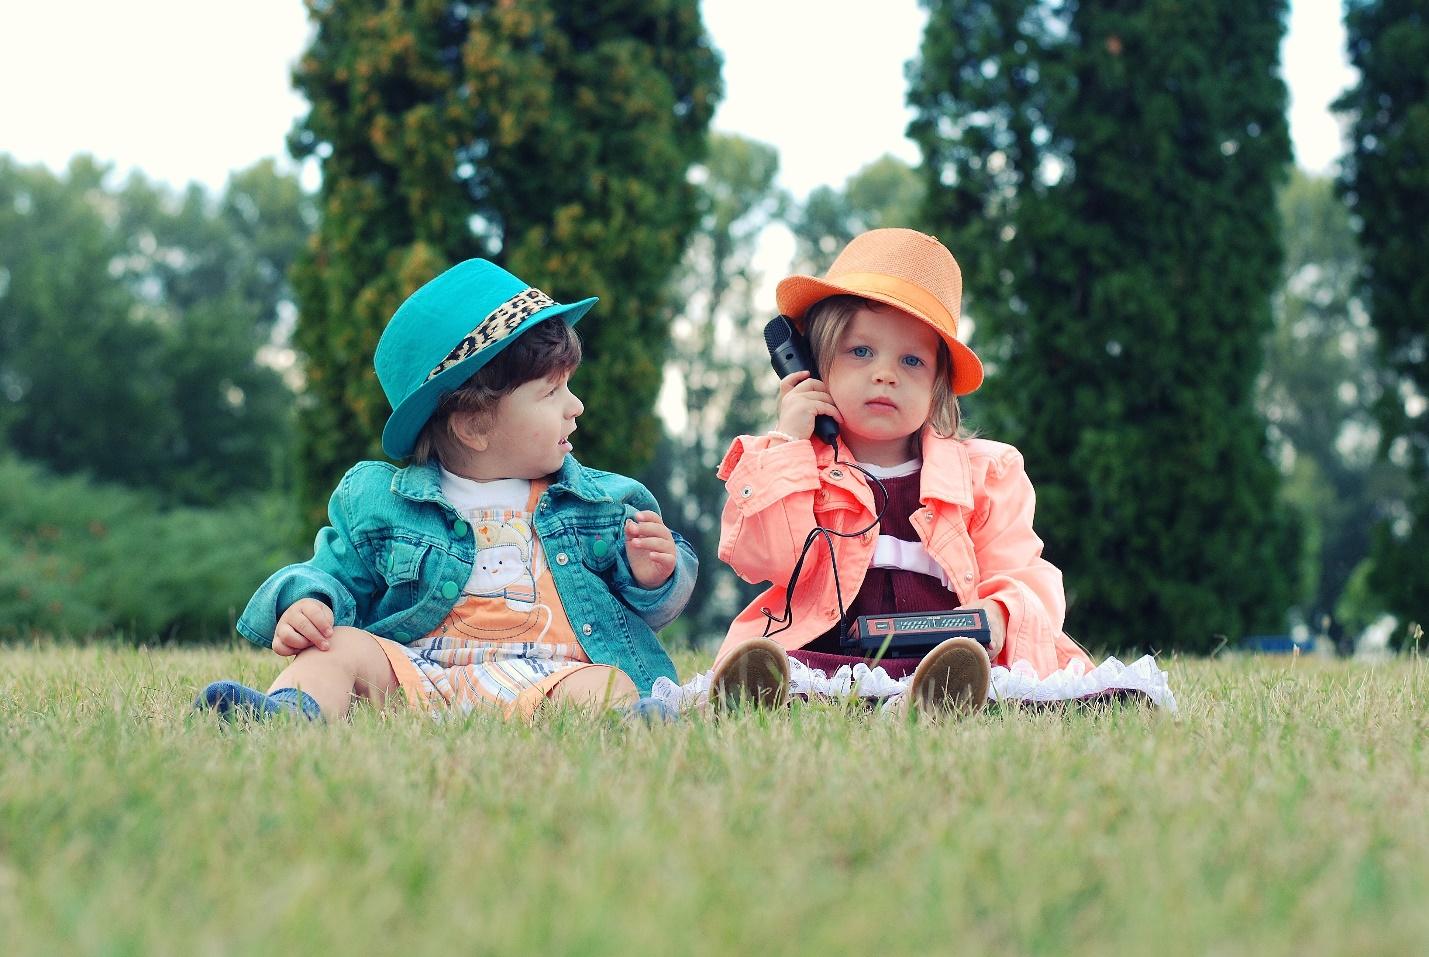 due bambine vestite con un vestito e un cappello colorato sono sedute sull'erba e una le tiene il telefono all'orecchio